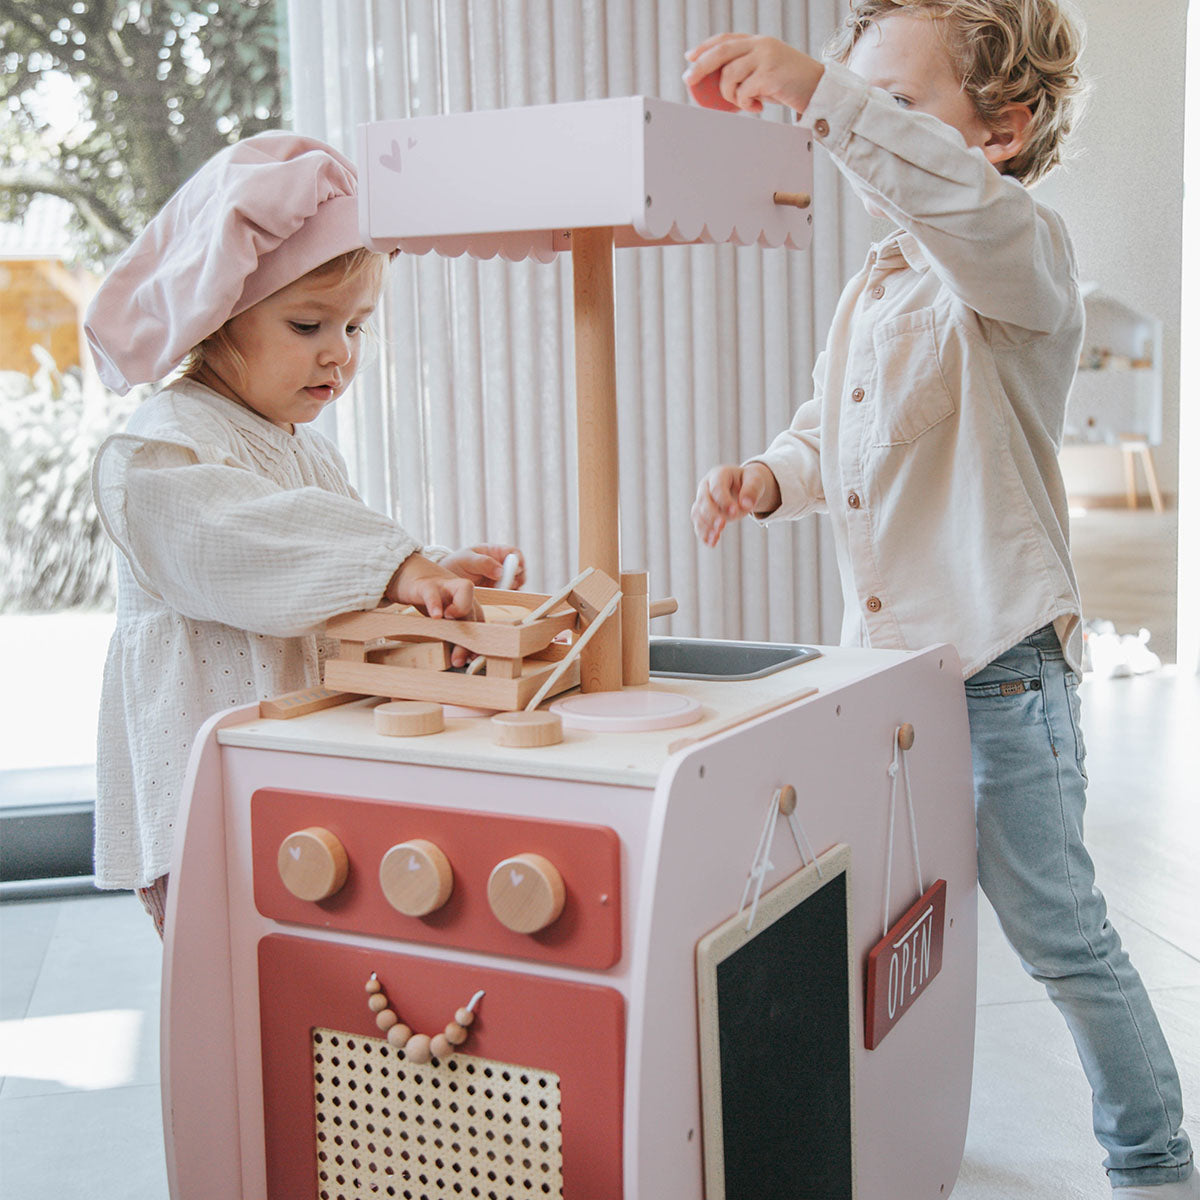 Waan je een echte kok in deze Label Label Bistro keuken roze. De ideale houten speelkeuken, die alles heeft: ovens, spoelbak, koelkast, opbergruimte en de mooiste accessoires. De keuken is gemaakt van FSC-hout. VanZus.